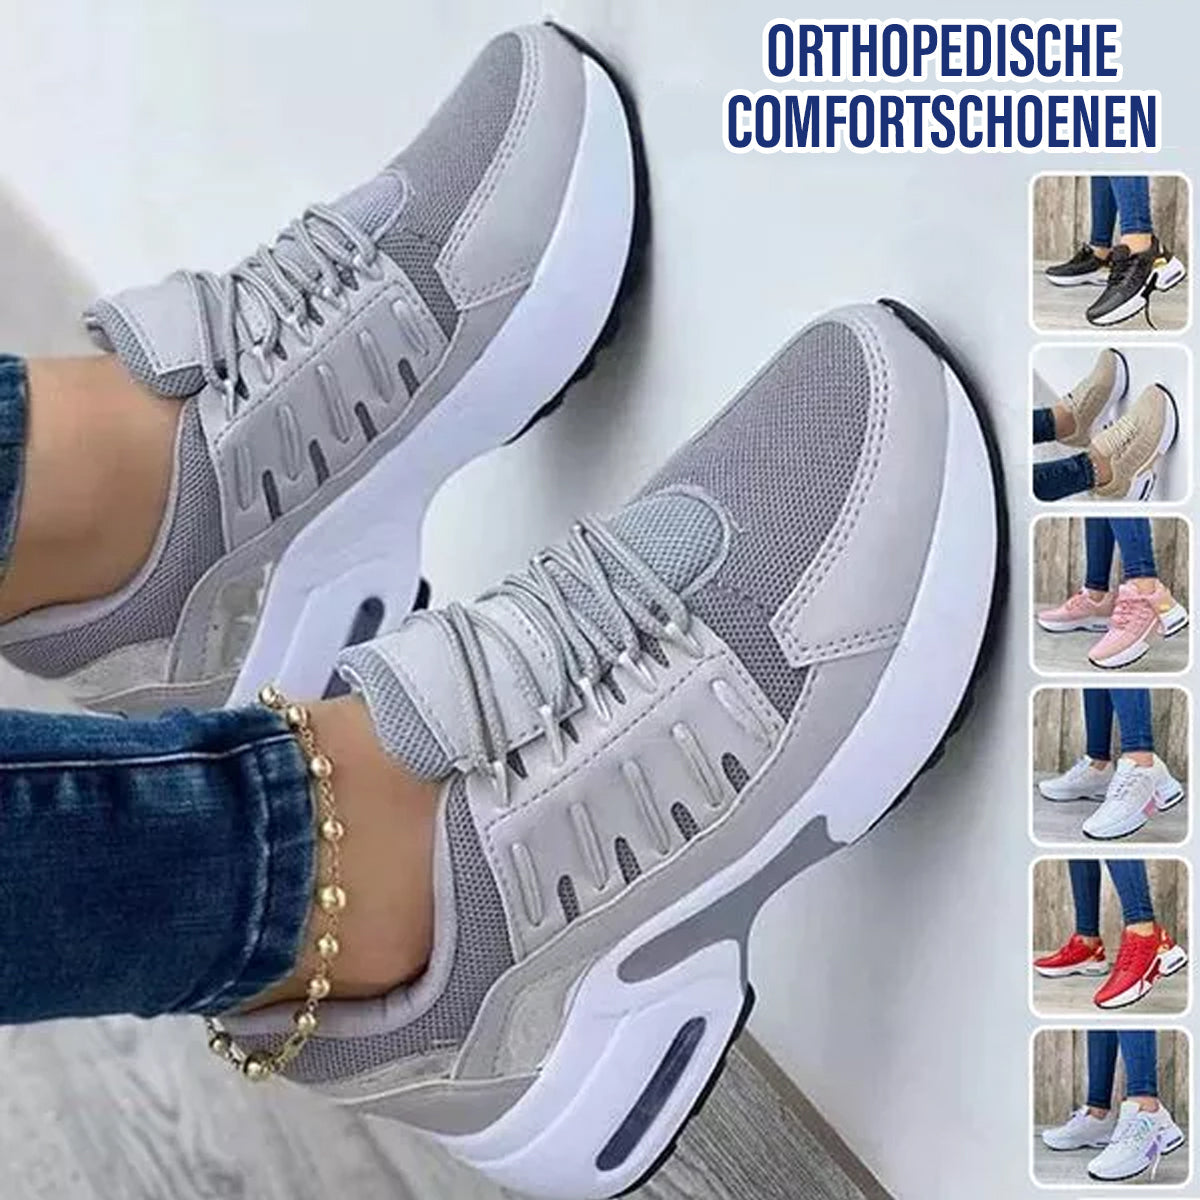 Carro Moda™ Orthopedische Comfort Sneakers